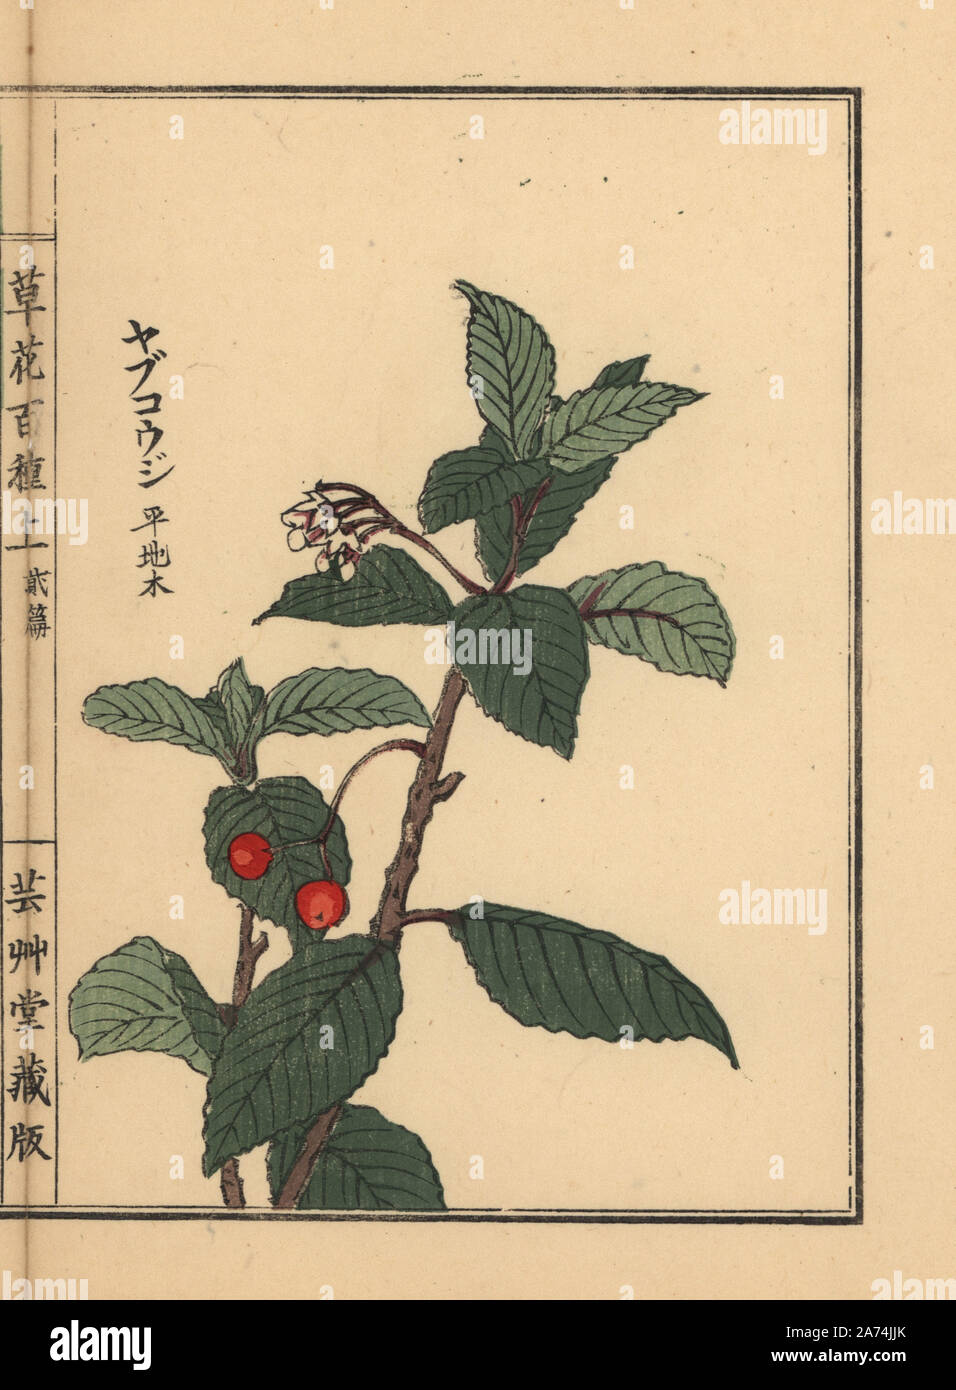 Japanese ardisia or Chirimen marlberry, Ardisia japonica. Handcoloured woodblock print by Kono Bairei from Kusa Bana Hyakushu (One Hundred Varieties of Flowers), Tokyo, Yamada, 1901. Stock Photo